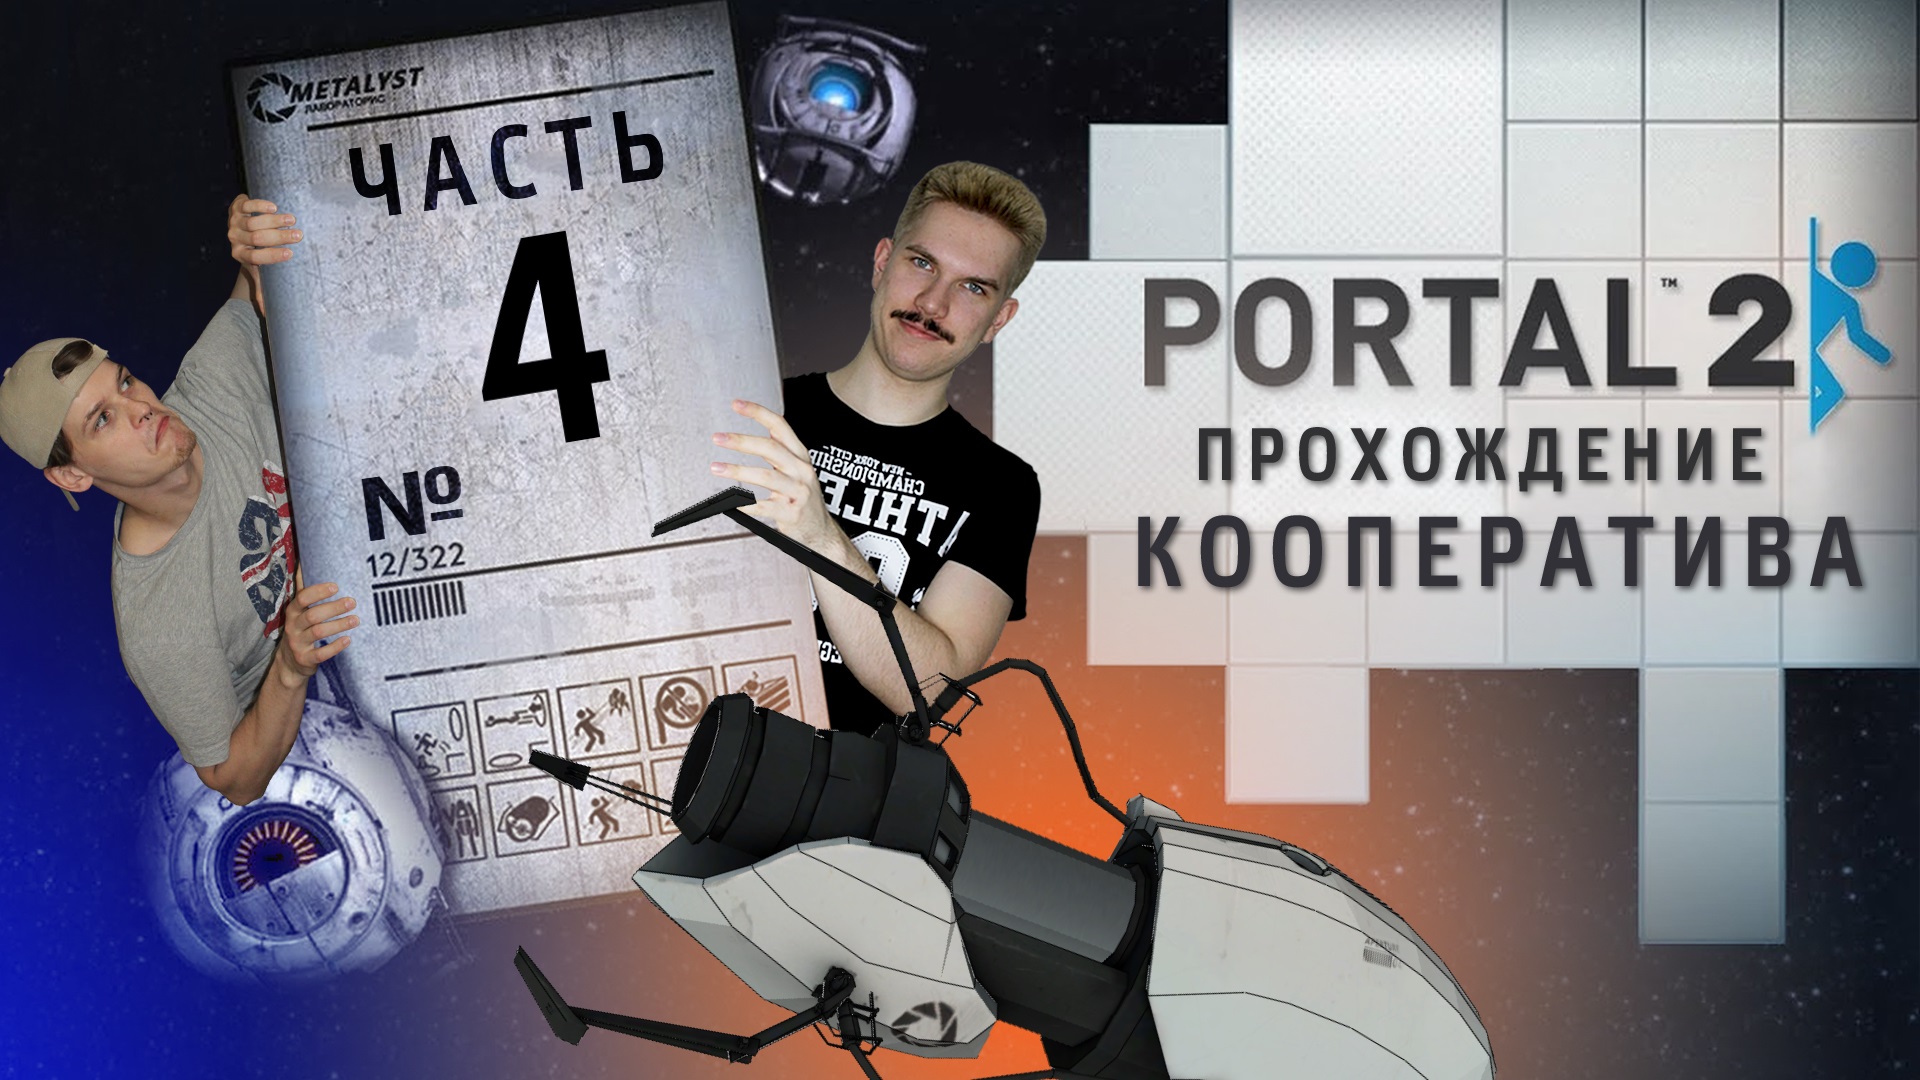 Portal 2 кооператив главы фото 16